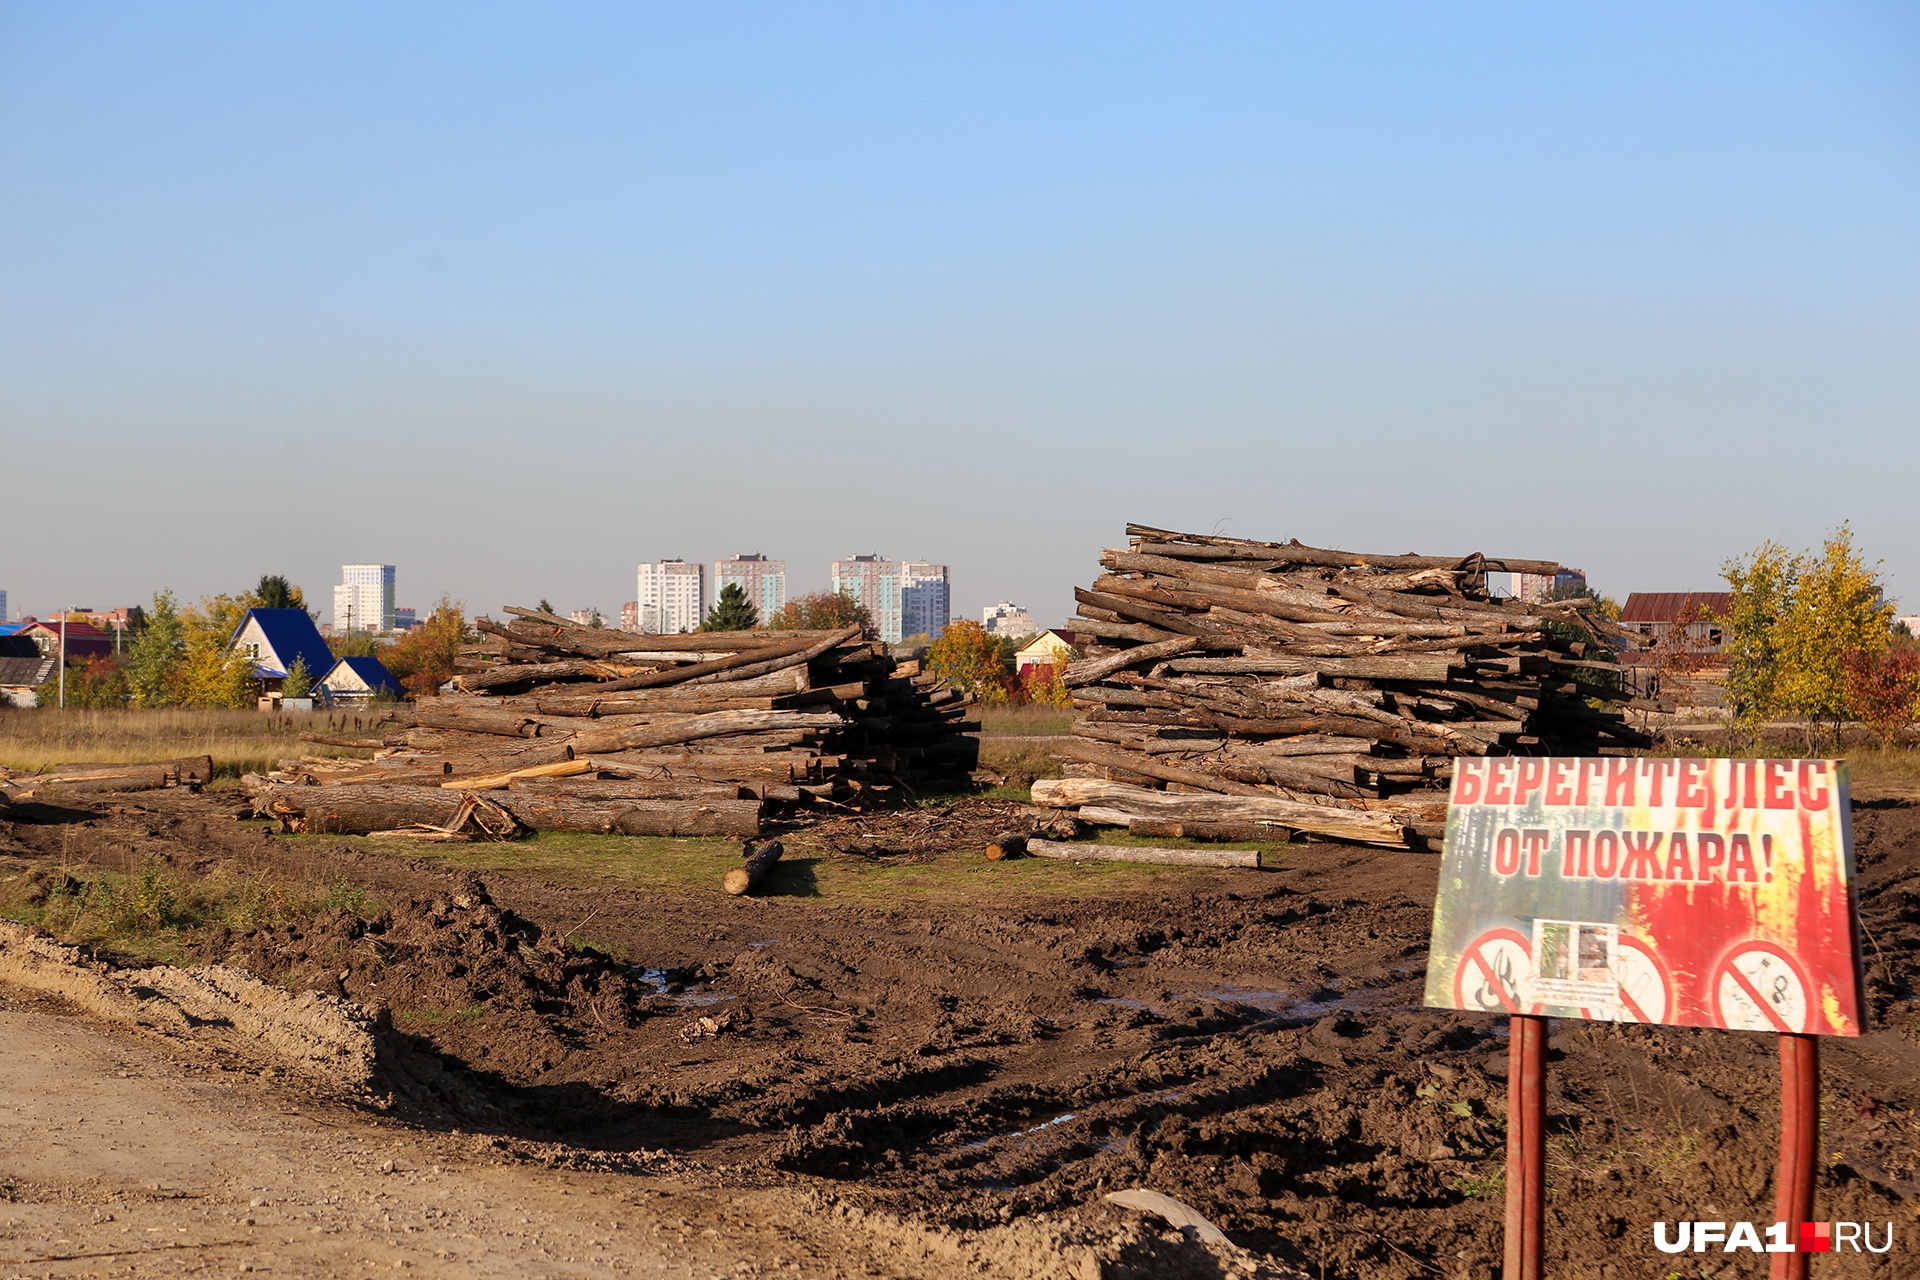 Очень символично, что возле срубленных деревьев стоит табличка с надписью «Берегите лес от пожара». 